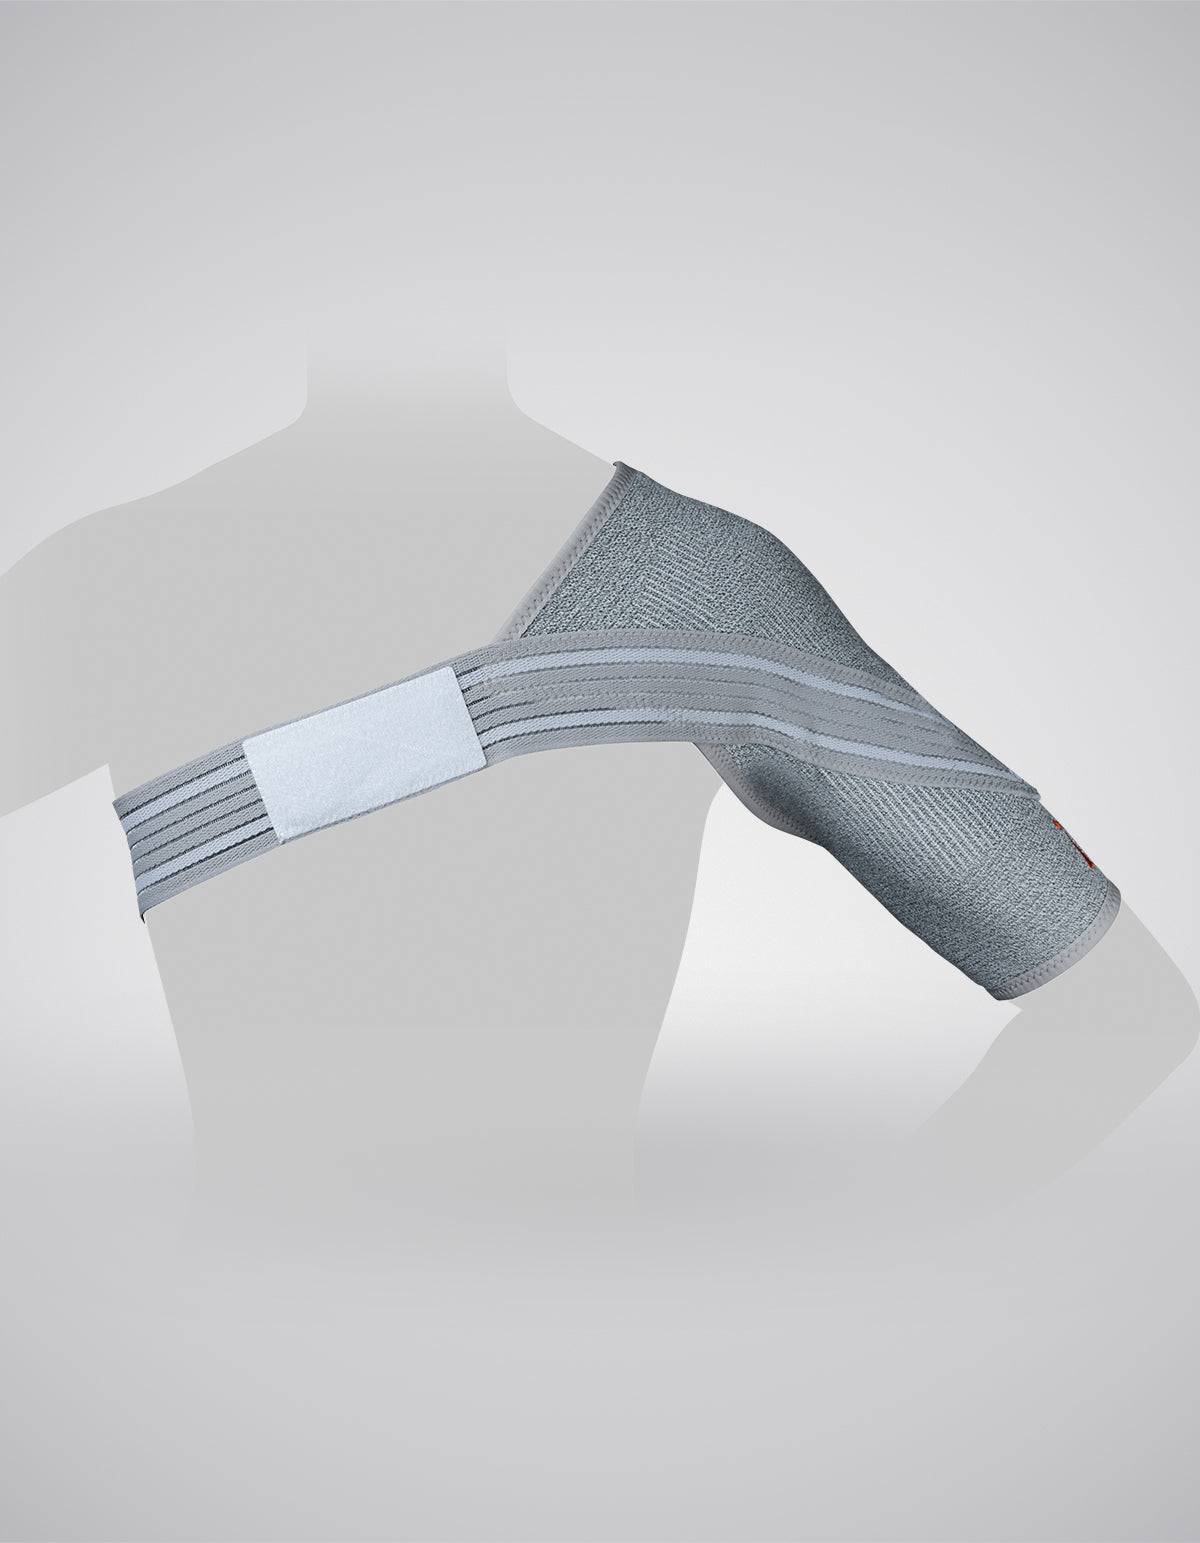 Shoulder Support Brace for Pain Relief - Buy Shoulder Supprt Belt –  jjhealthcareproducts